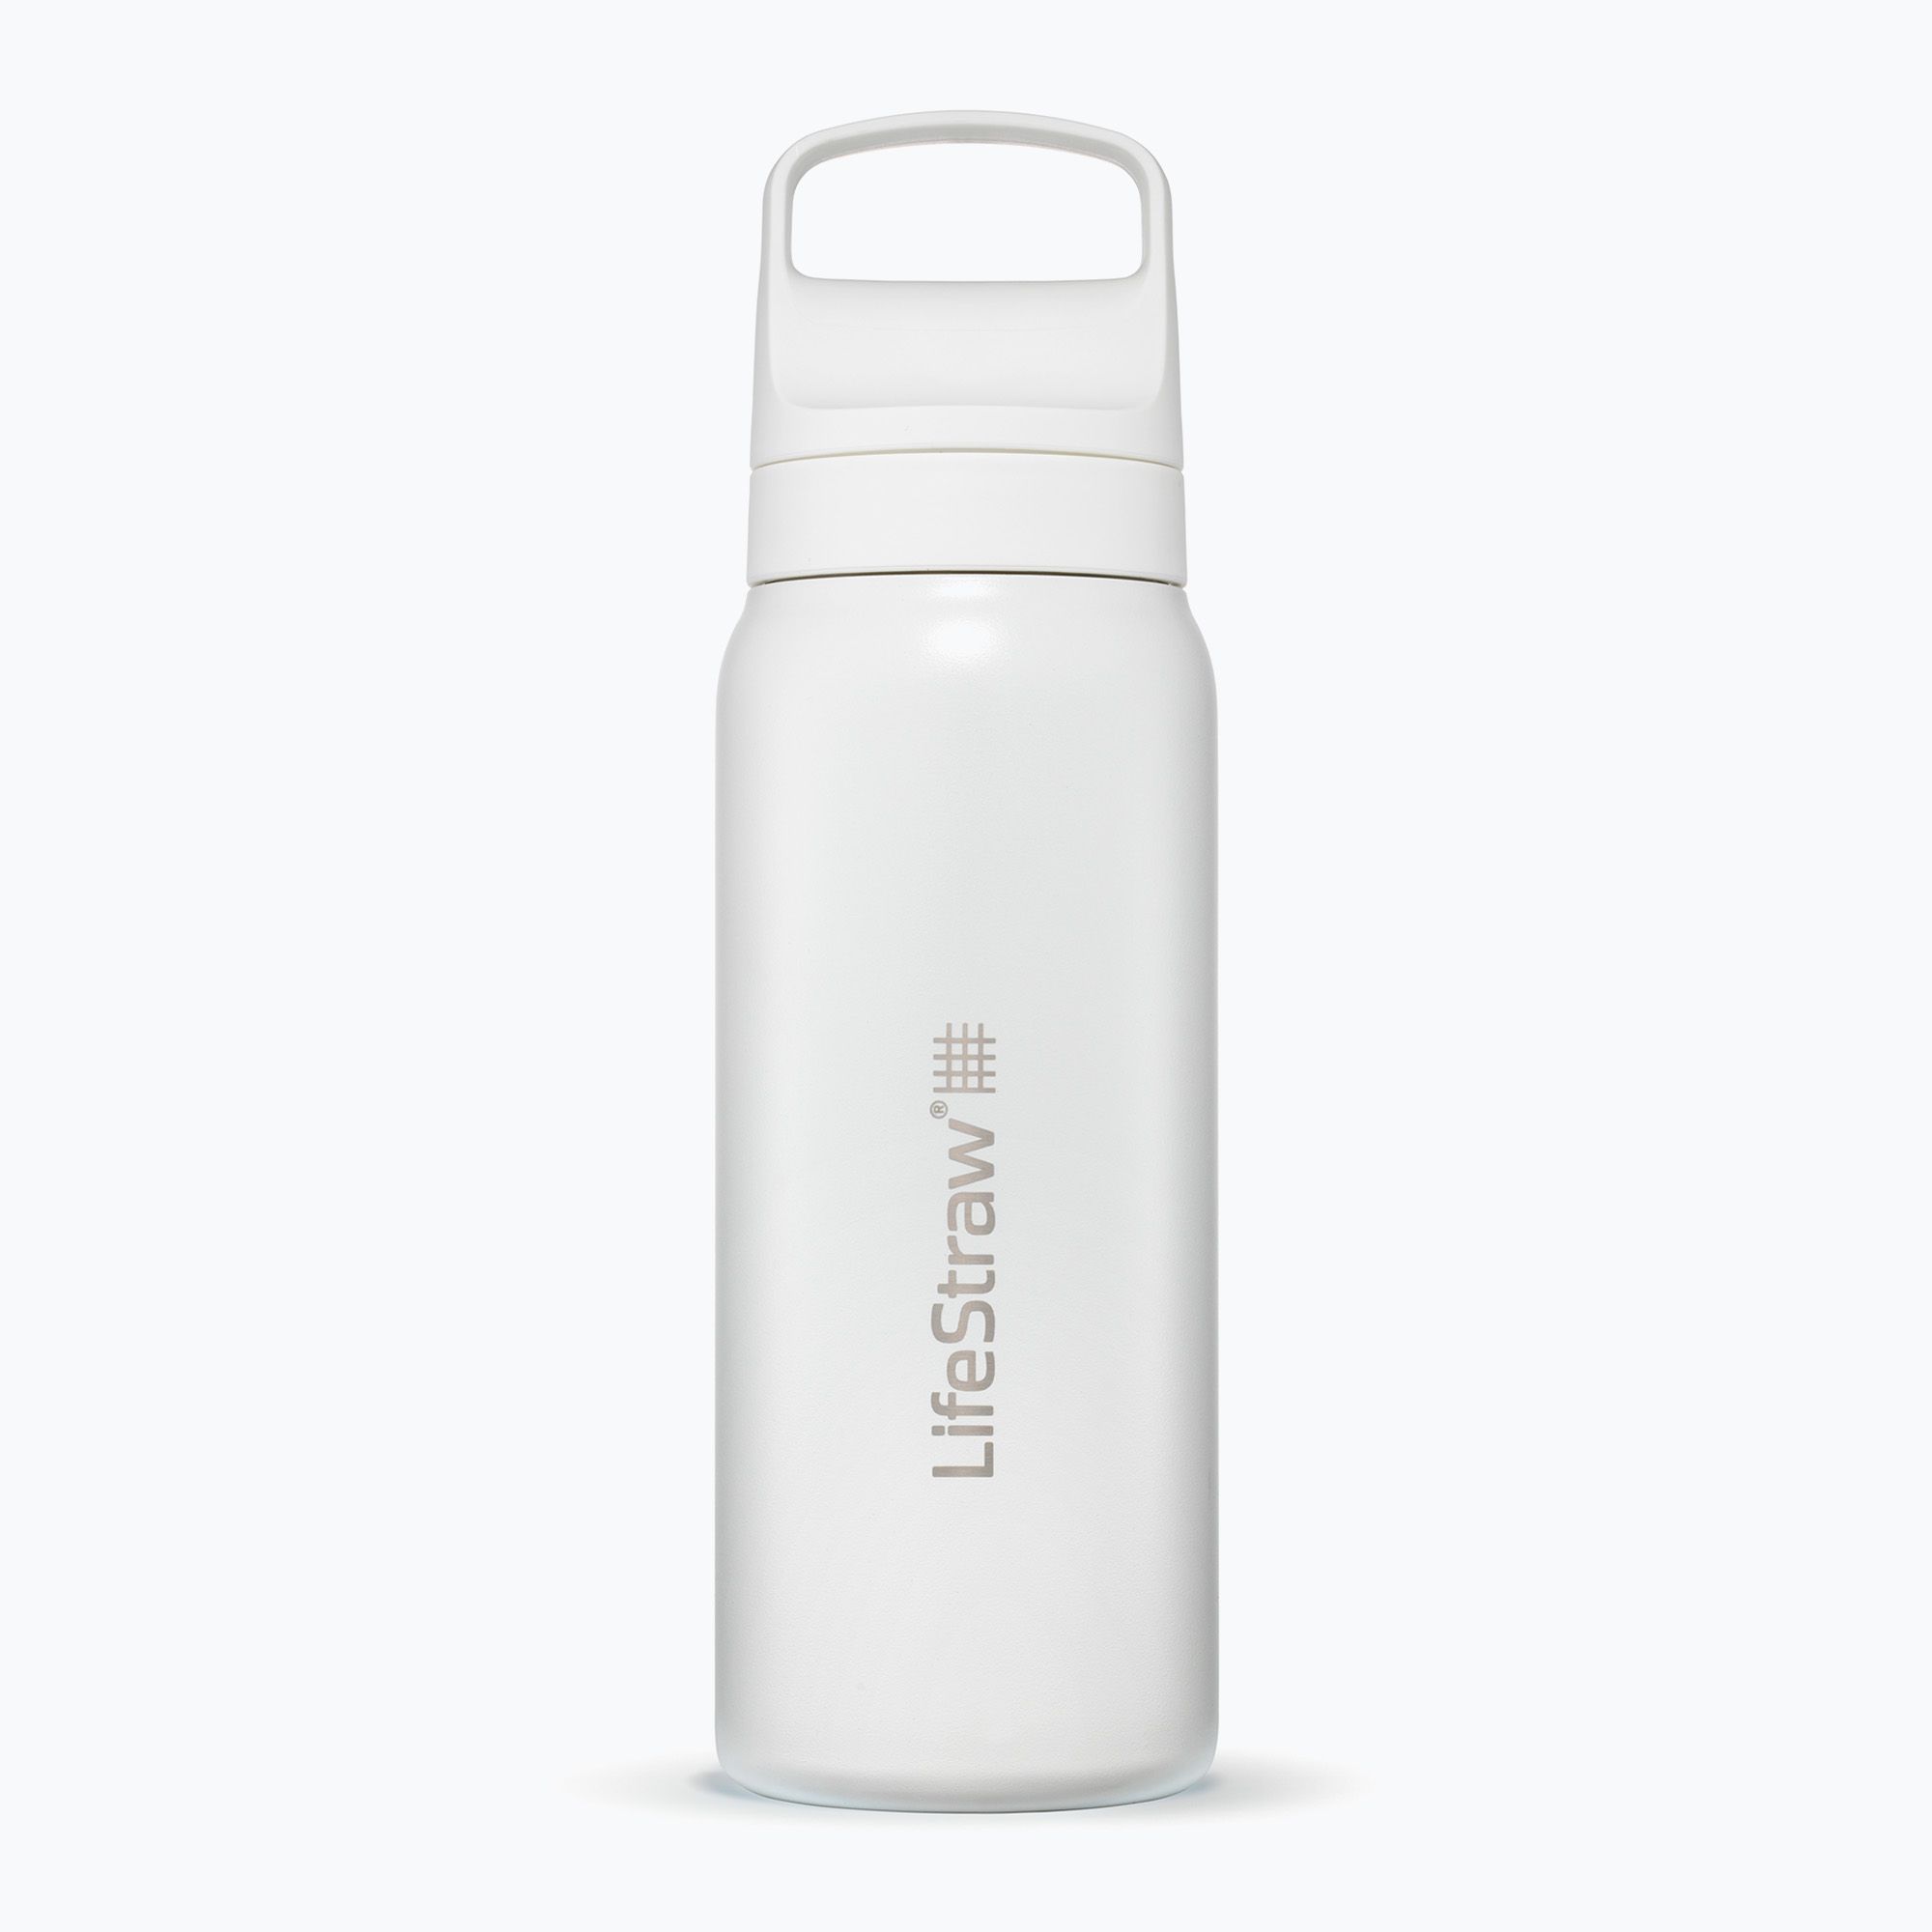 Lifestraw Water Filter Bottle Go Stainless Steel 700ml White